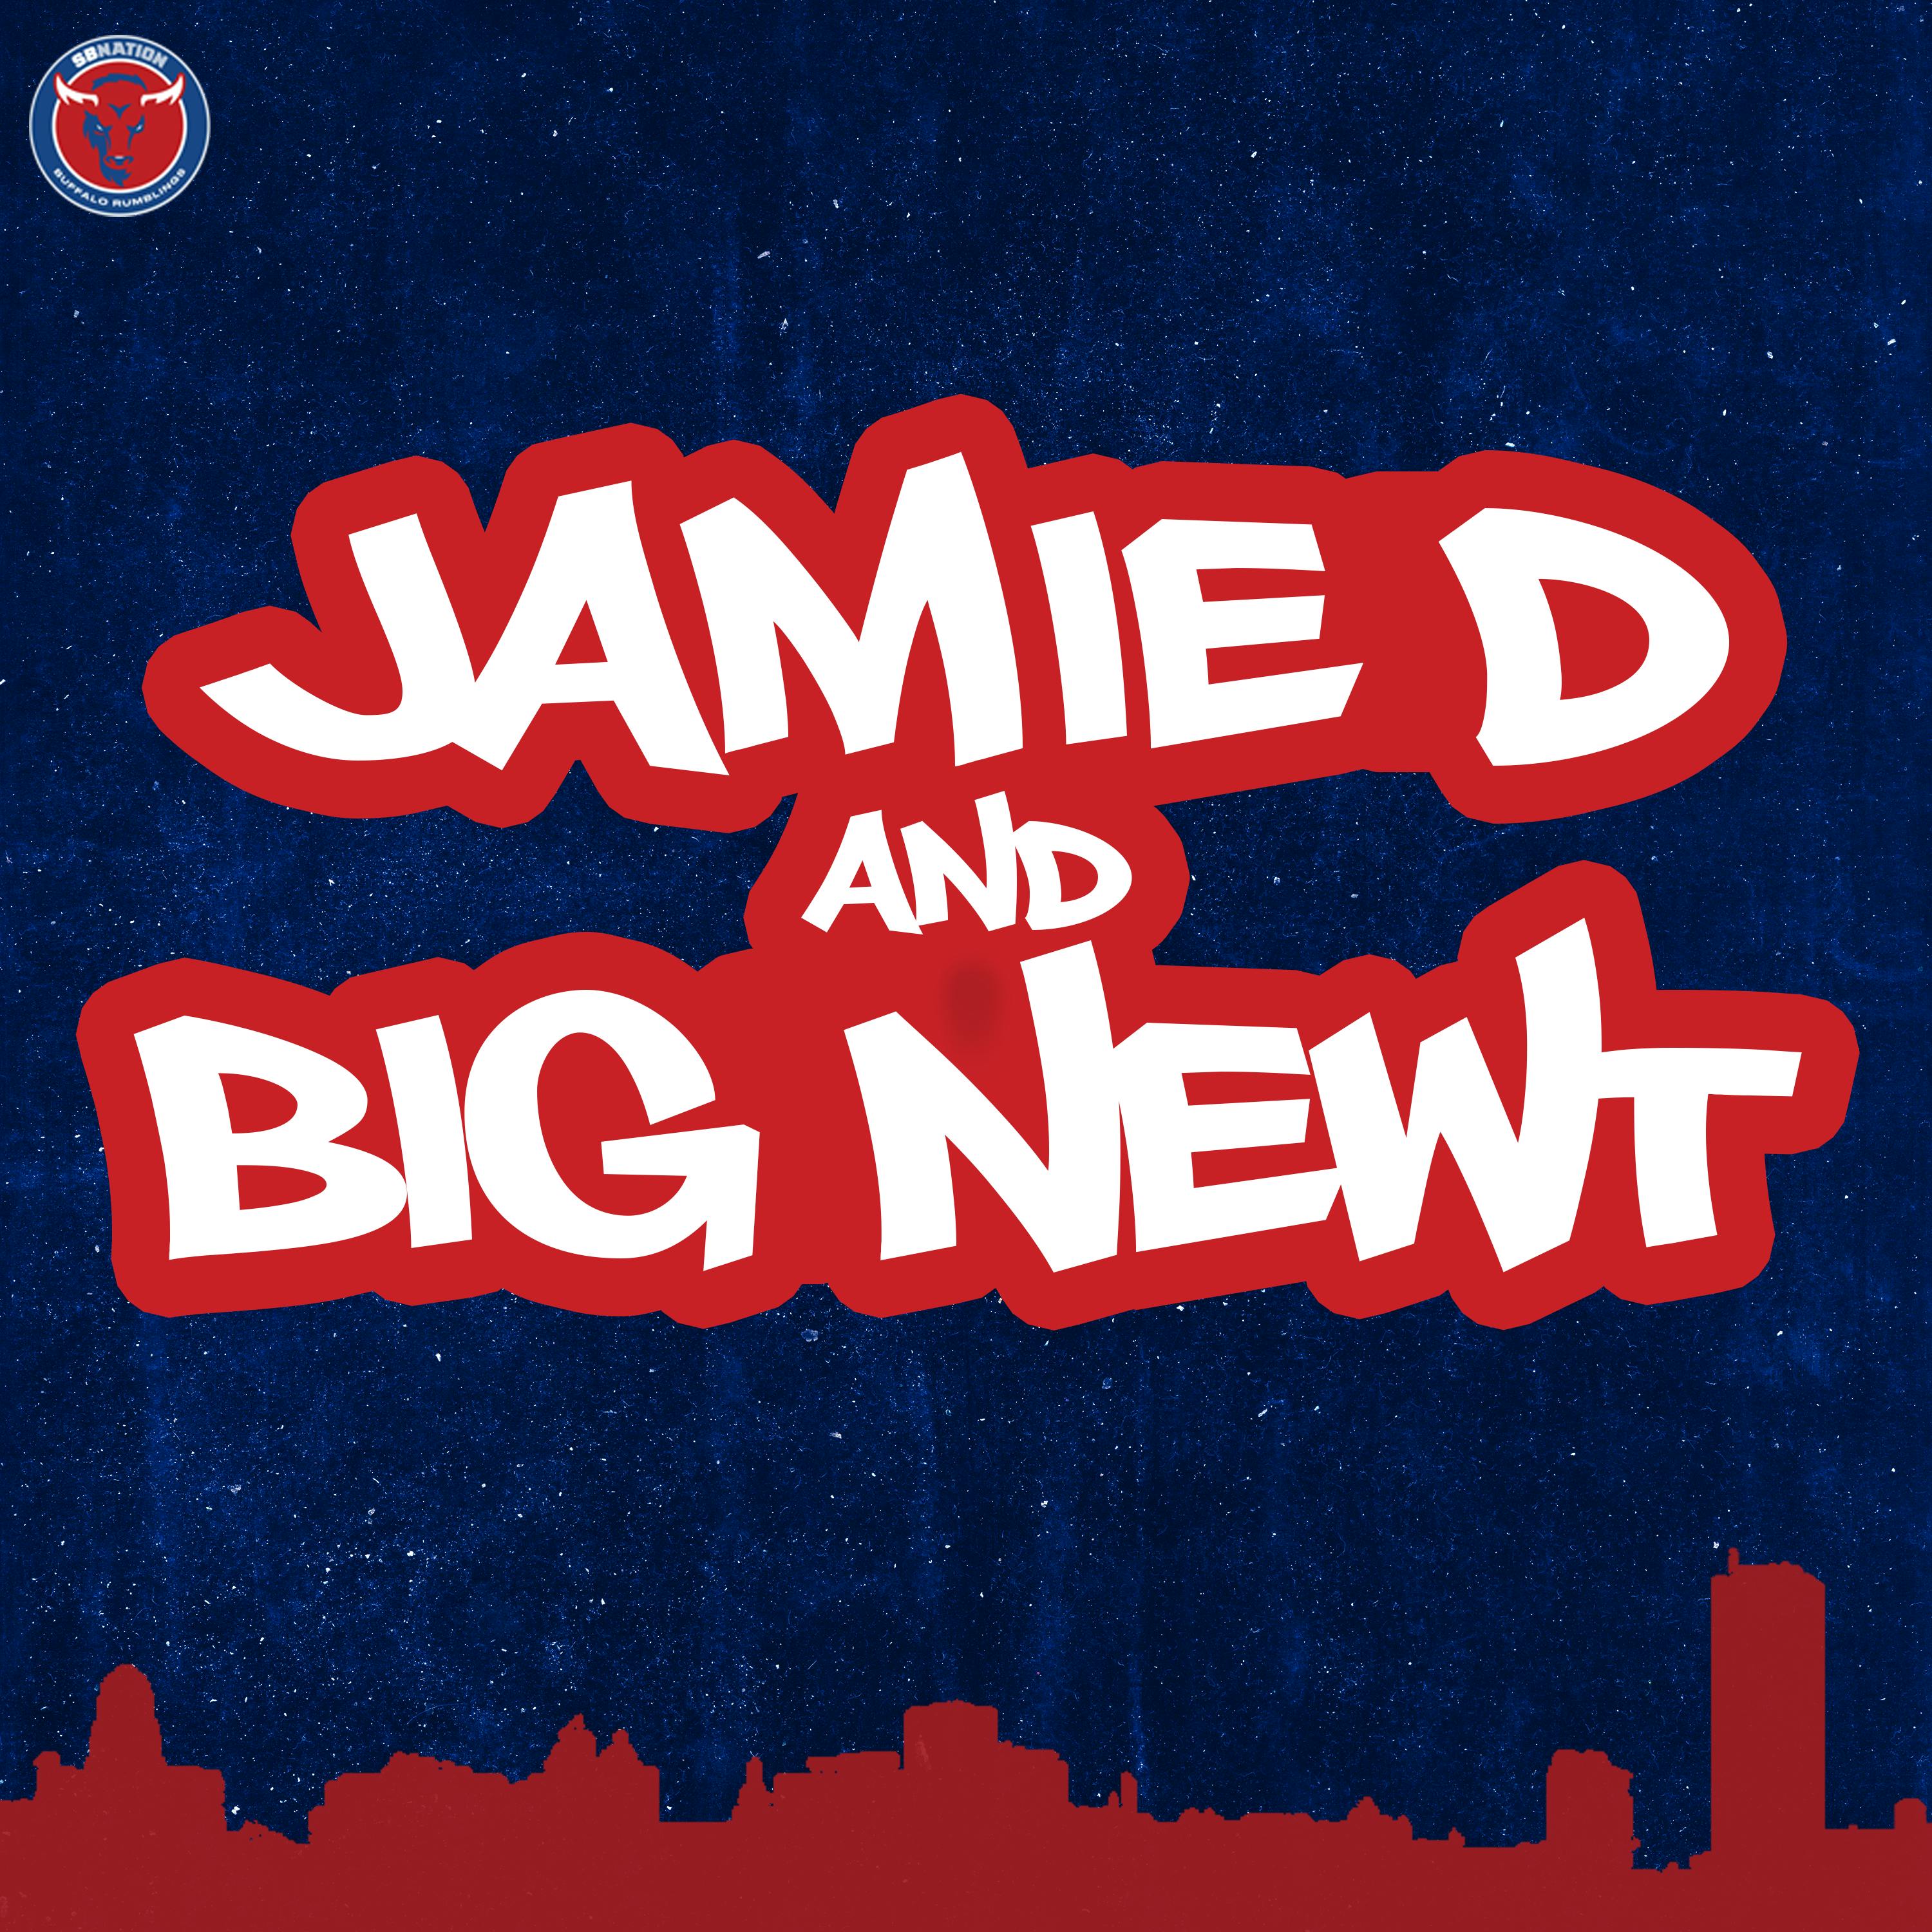 Jamie D & Big Newt: Josh Allen's Regression